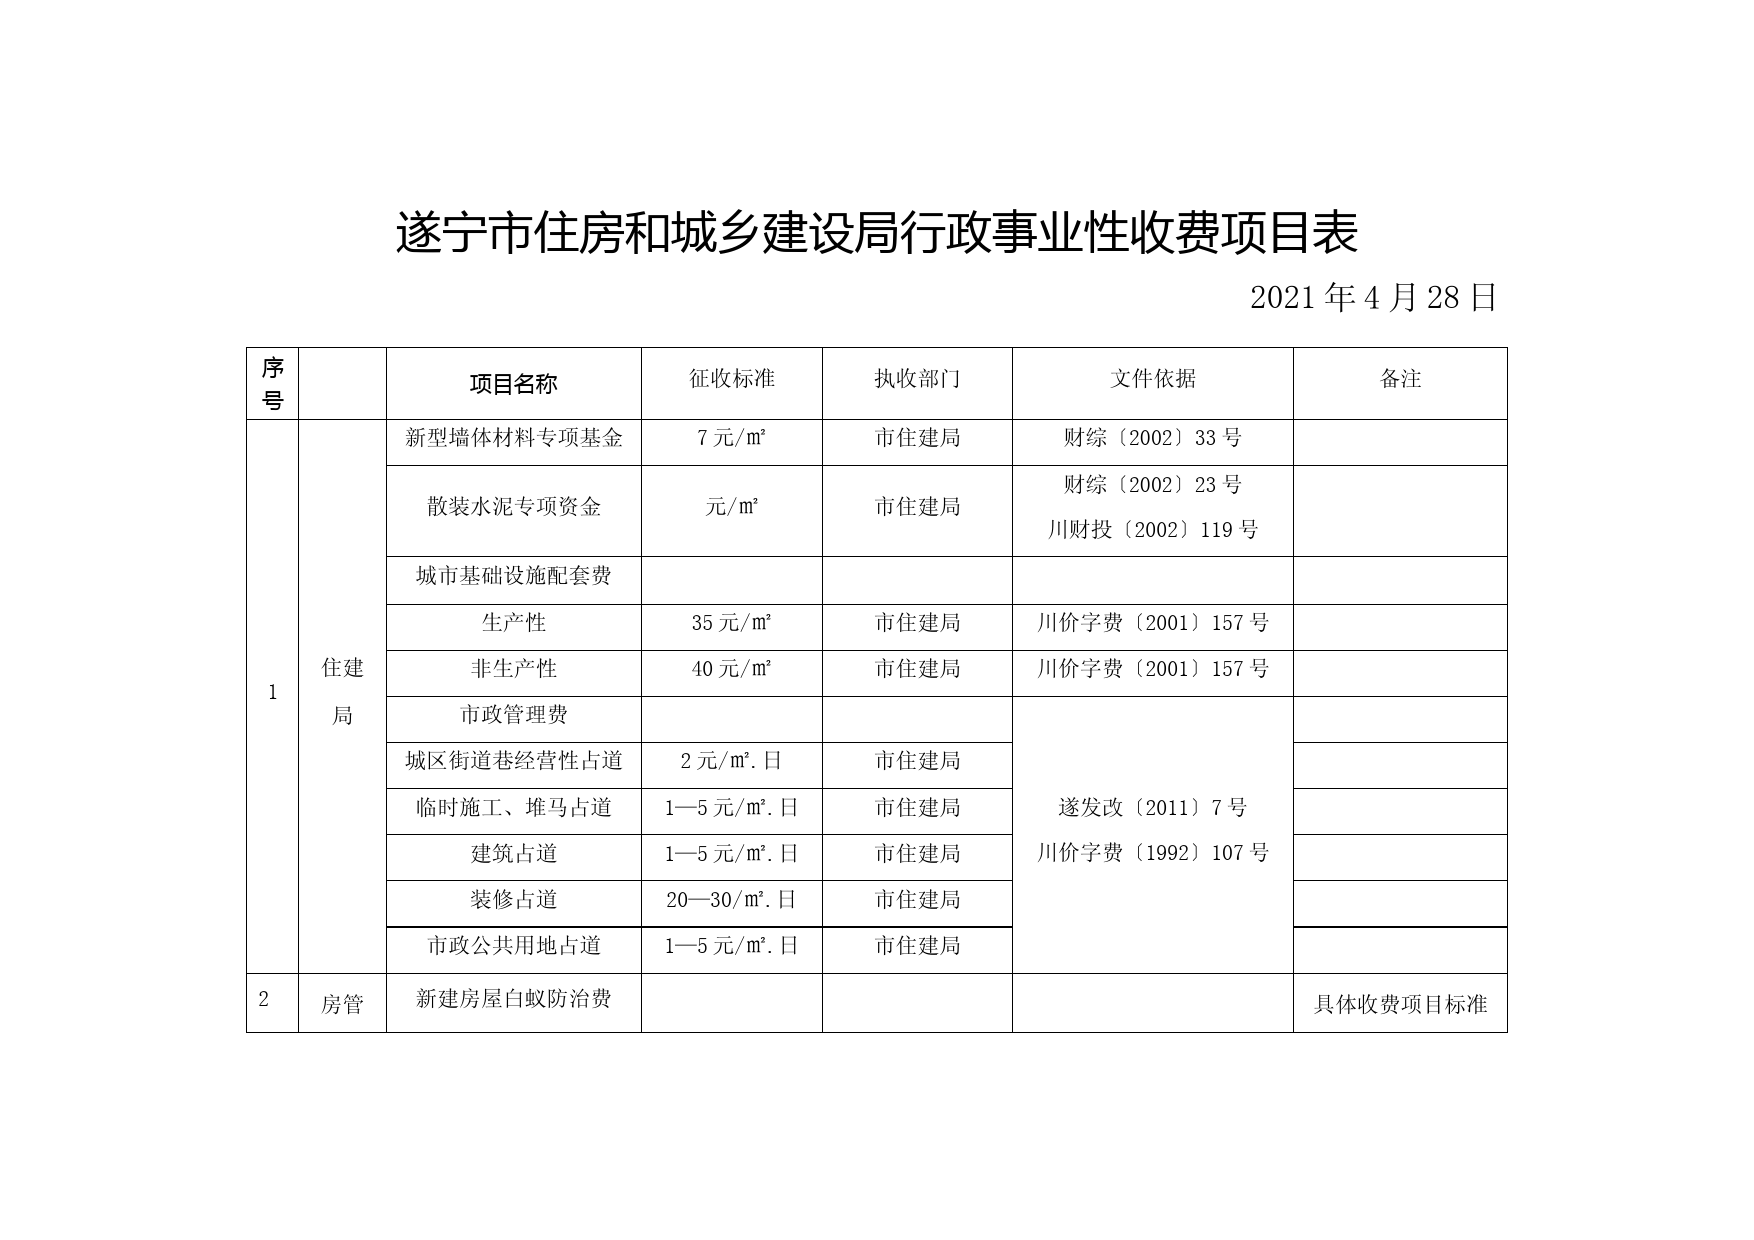 遂宁市住房和城乡建设局行政事业性收费项目表